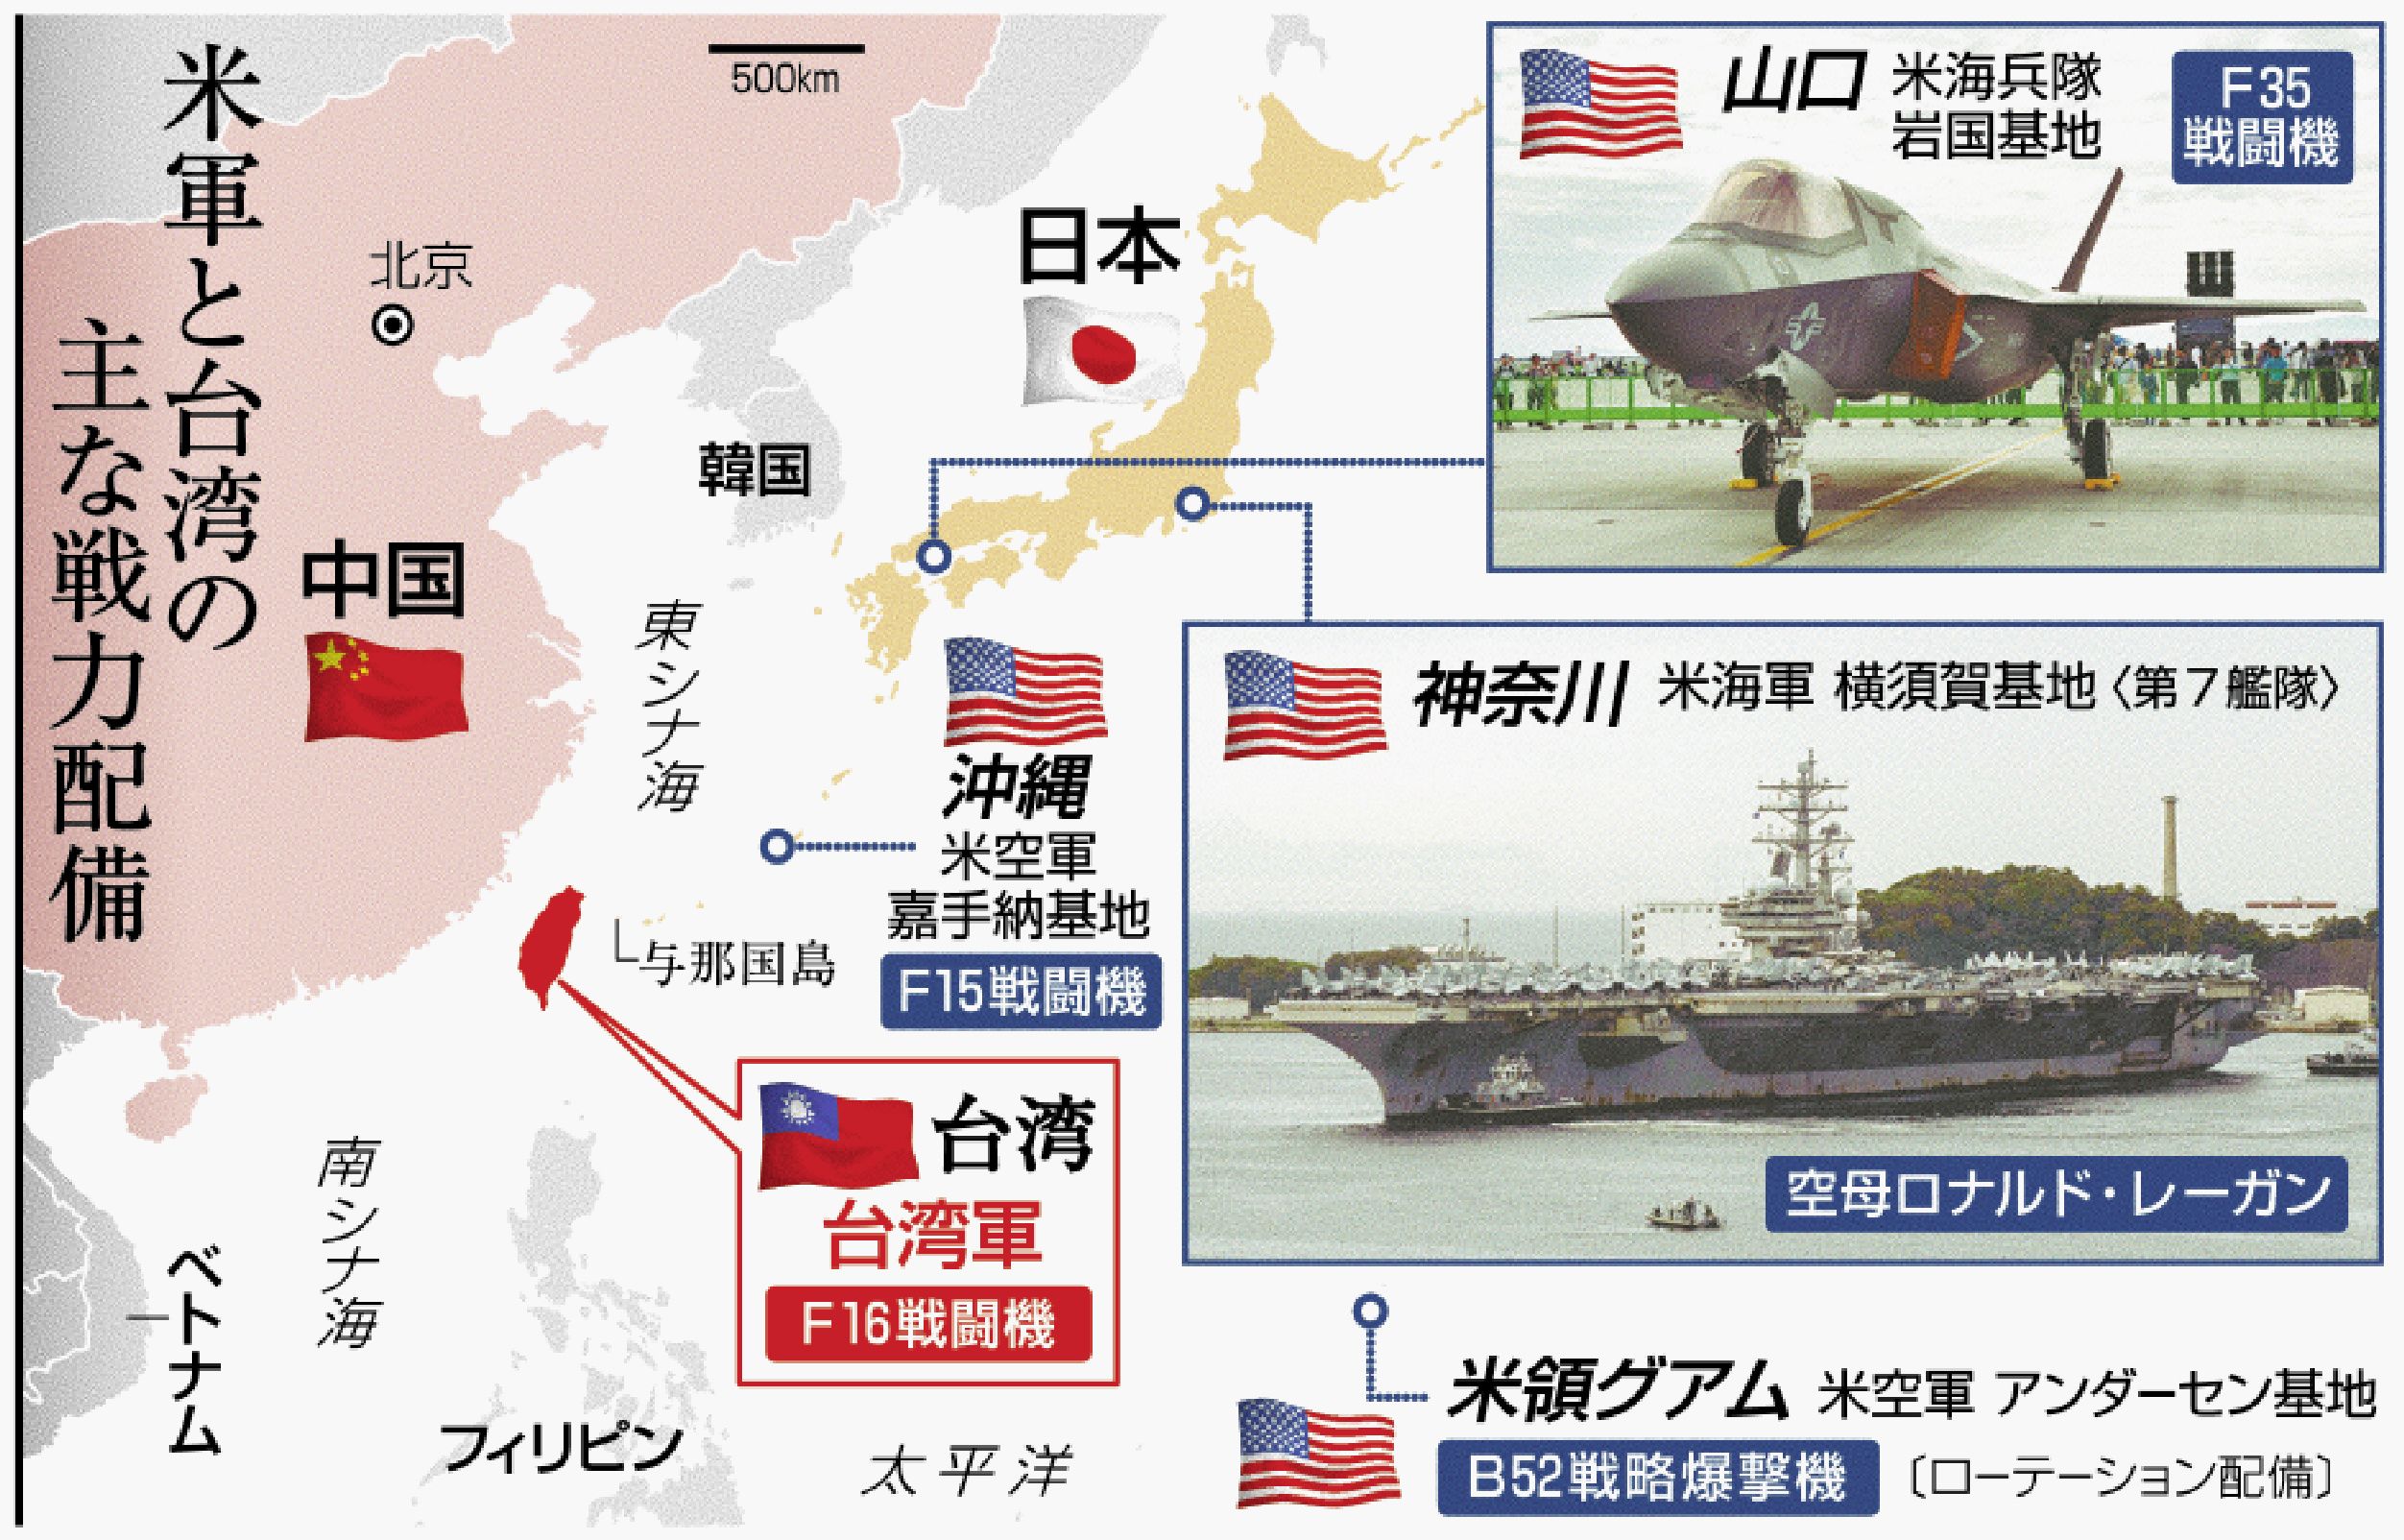 [米中最前線 迫る台湾有事]（1）台湾有事なら「連戦連敗」 米軍のシミュレーション 基地ある日本も危機 | 共同通信 プレミアム | 沖縄タイムス＋プラス